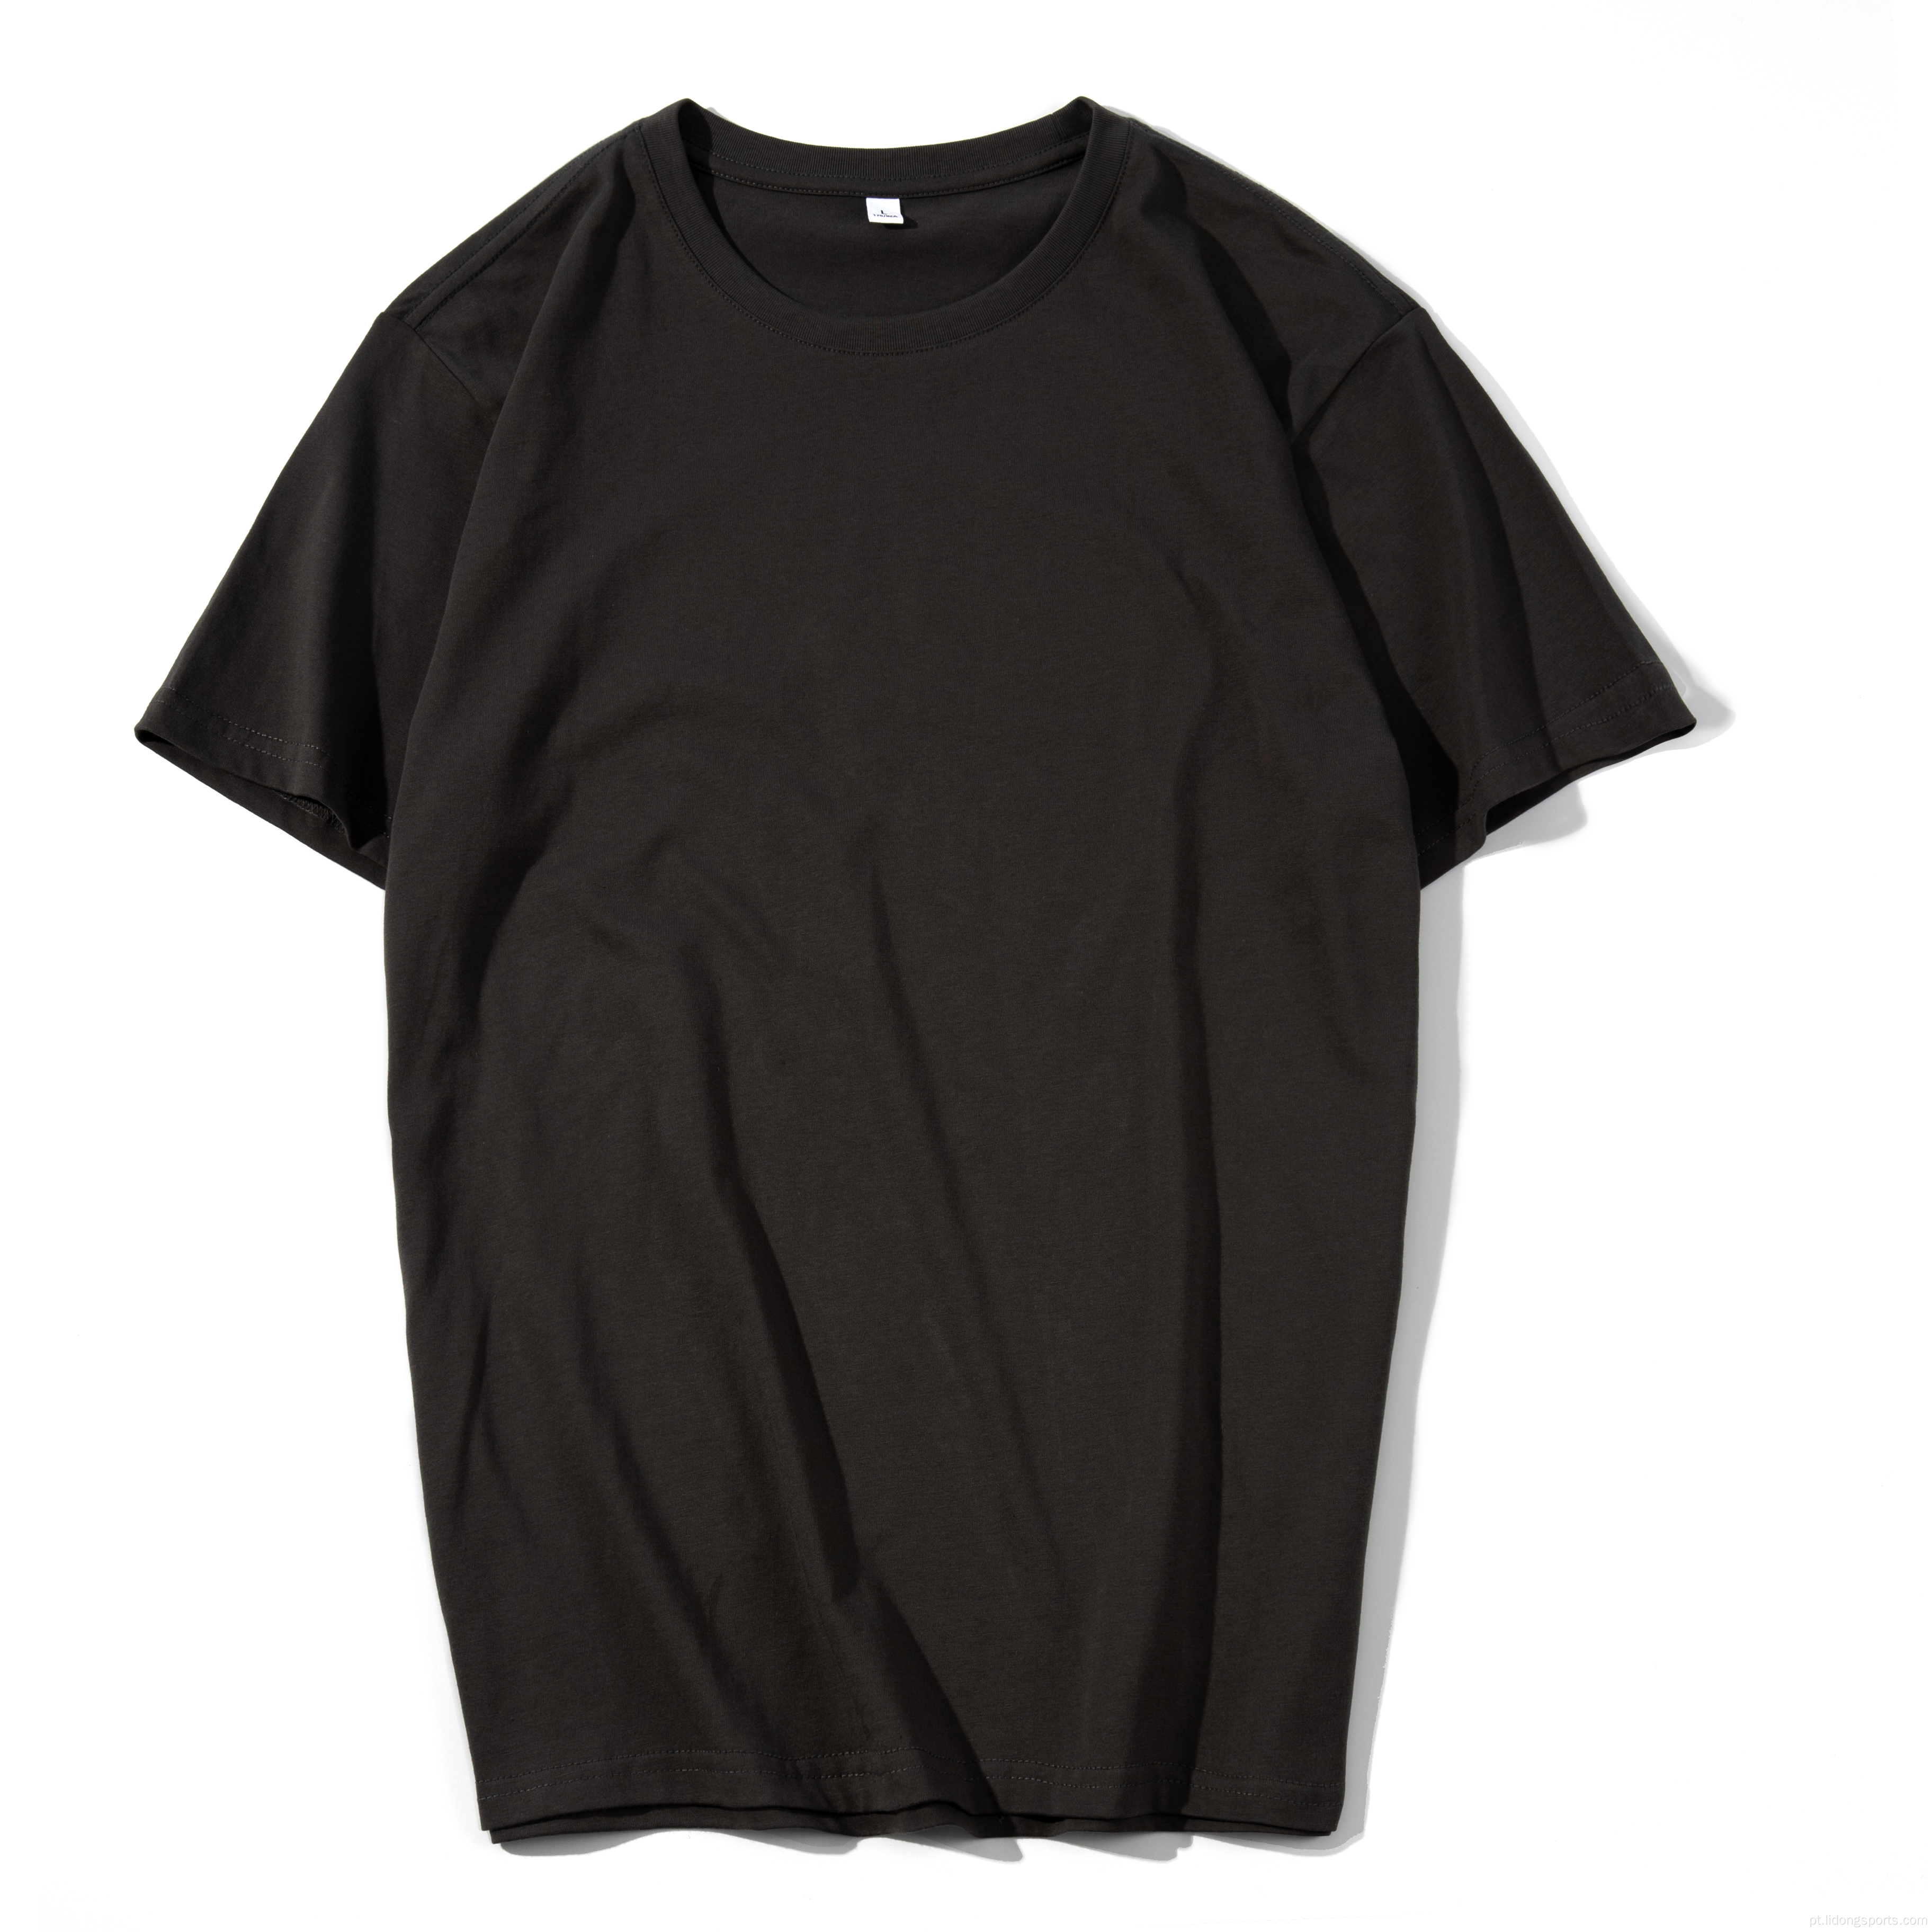 Camiseta masculina unissex liso 100% algodão de camiseta de tamanho grande